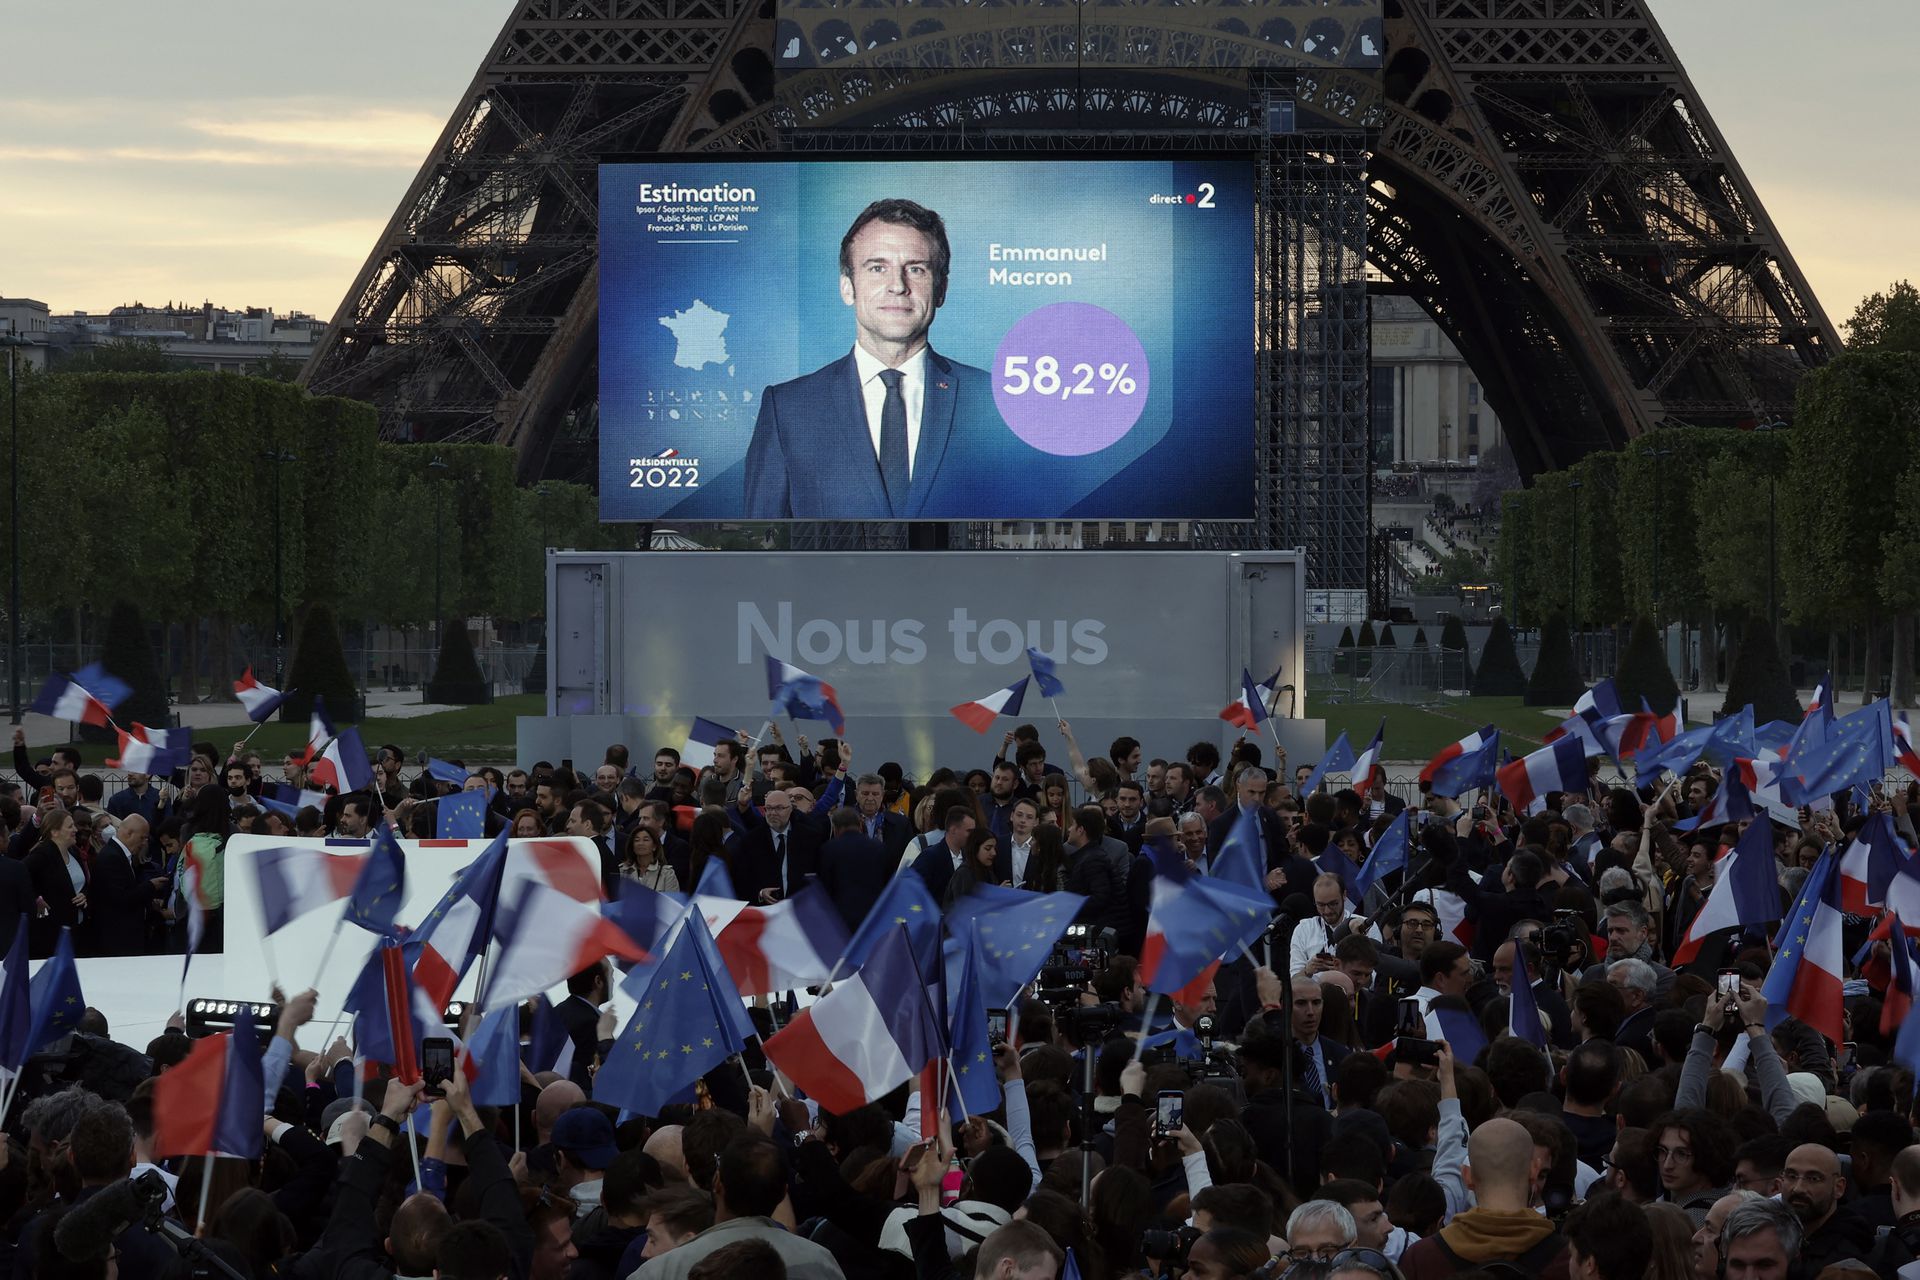 Pilpres Prancis: Macron mengalahkan  Le Pen,  berjanji menebus kesalahan di periode pertama